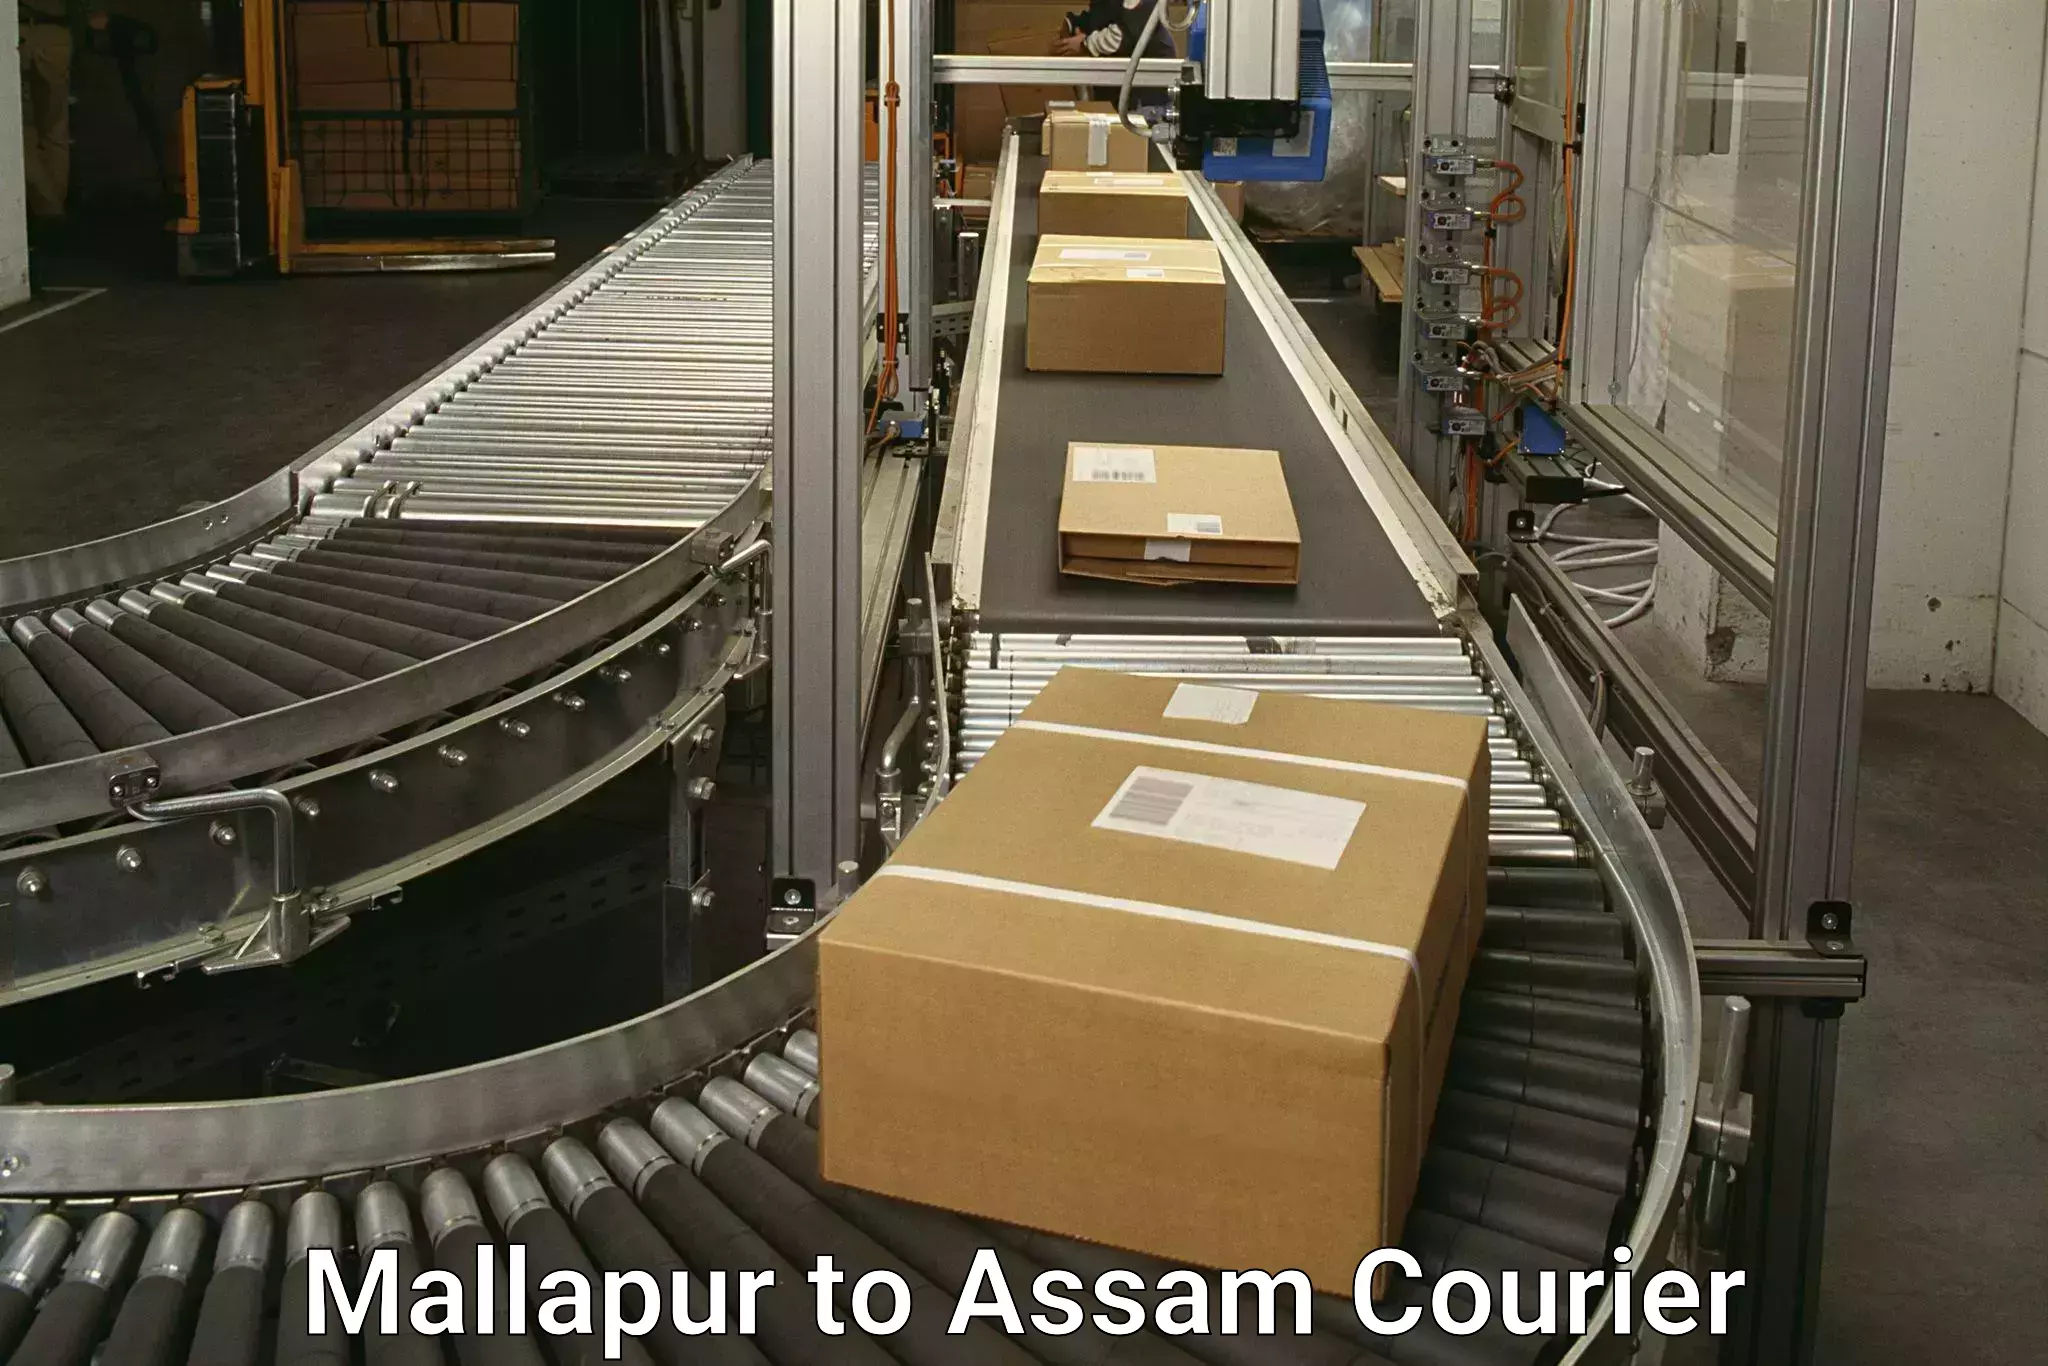 Cash on delivery service Mallapur to Bijni